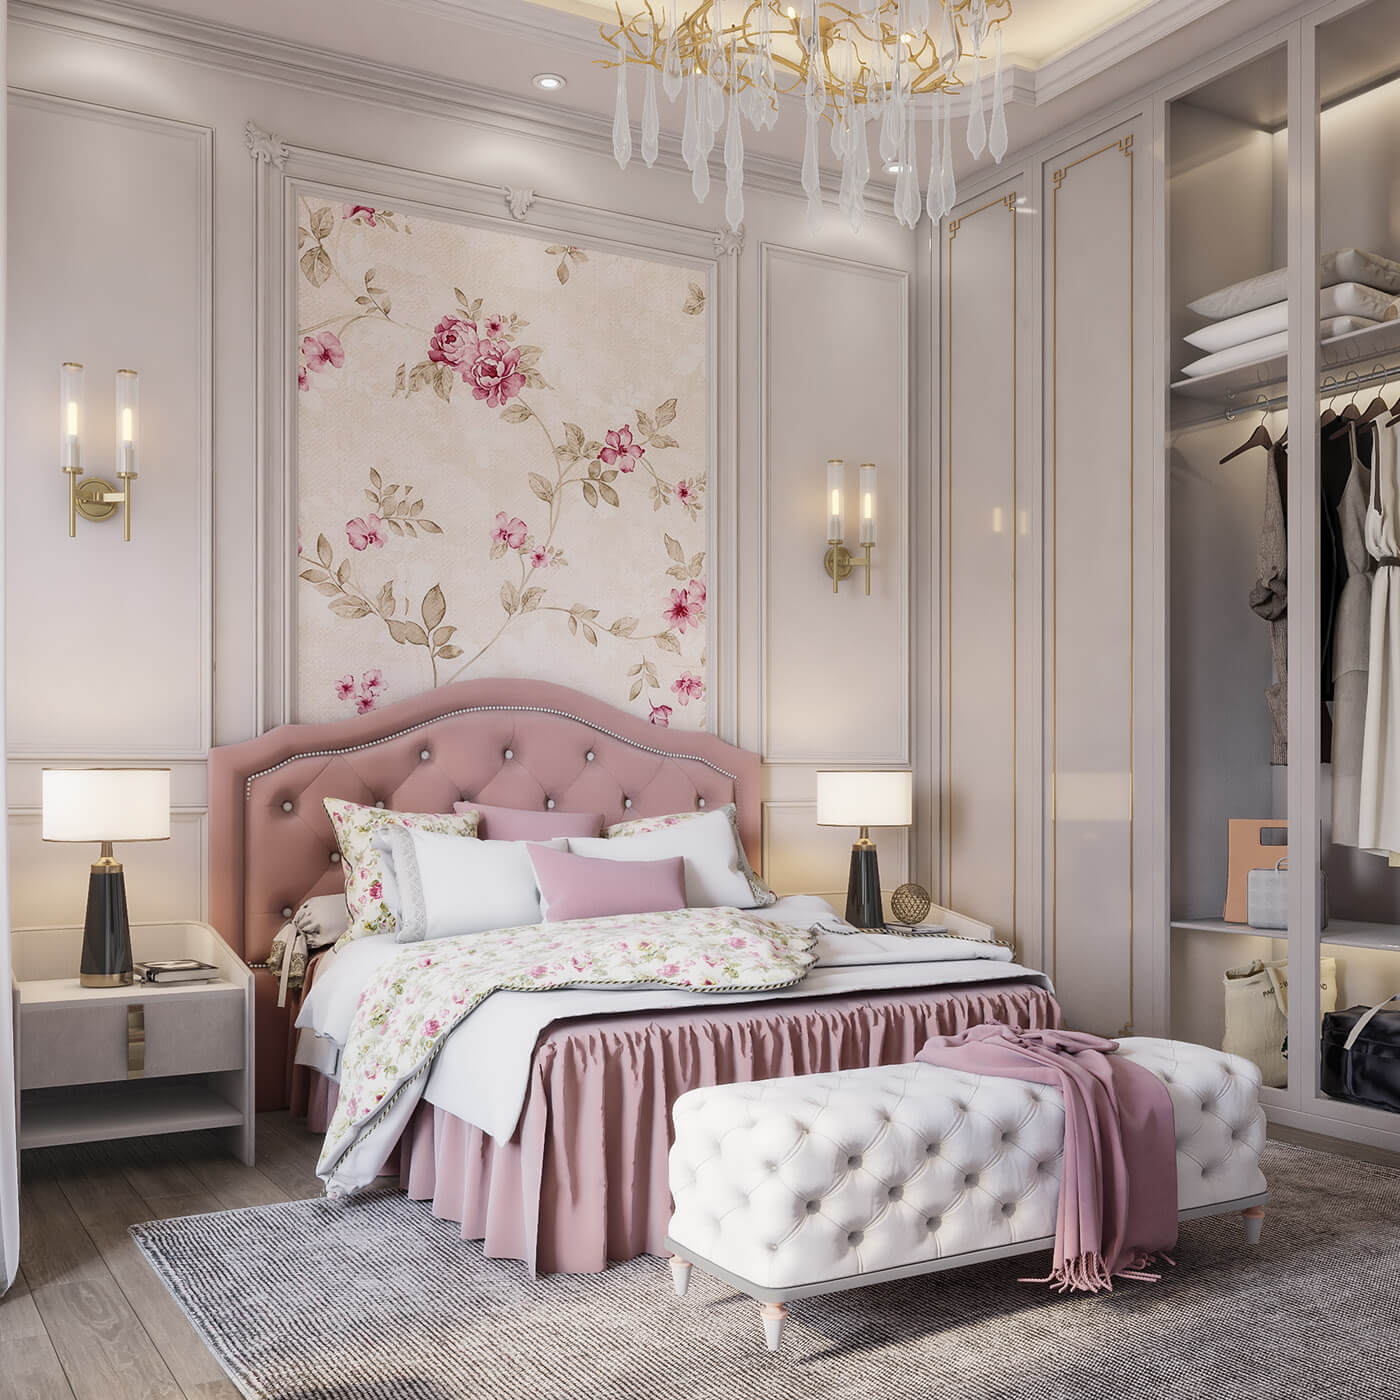 Thiết kế nội thất phòng ngủ màu hồng xinh xắn - GKHOME.VN